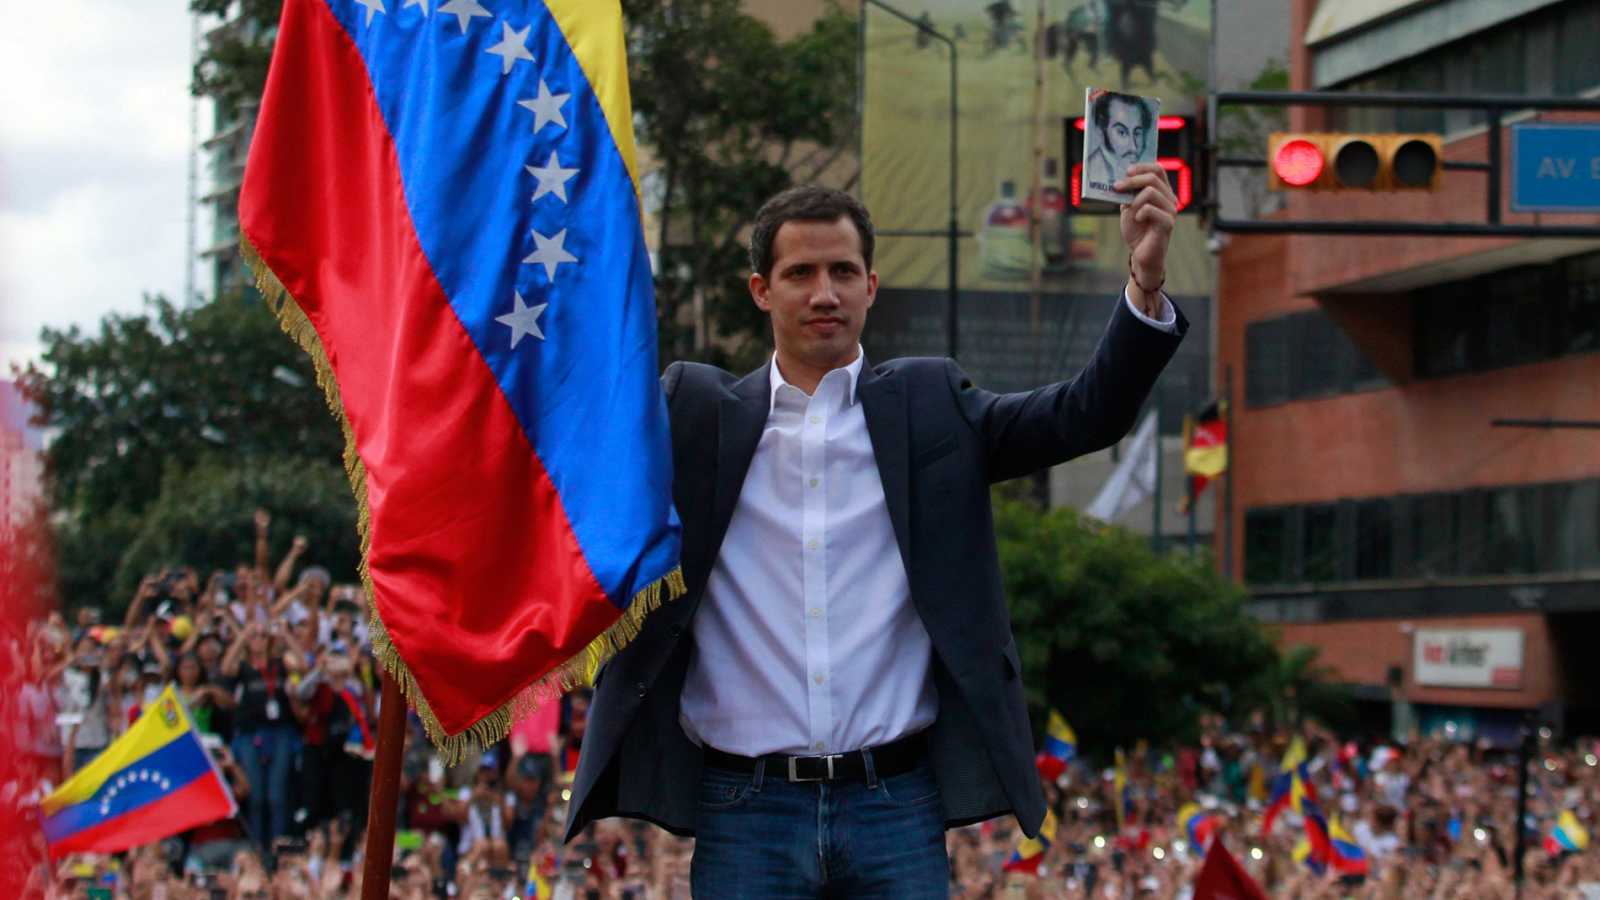 فنزويلا زعيم المعارضة الفنزويلية يعلن نفسه رئيسا في استبدال مادورو مع الاعتراف بالولايات المتحدة.